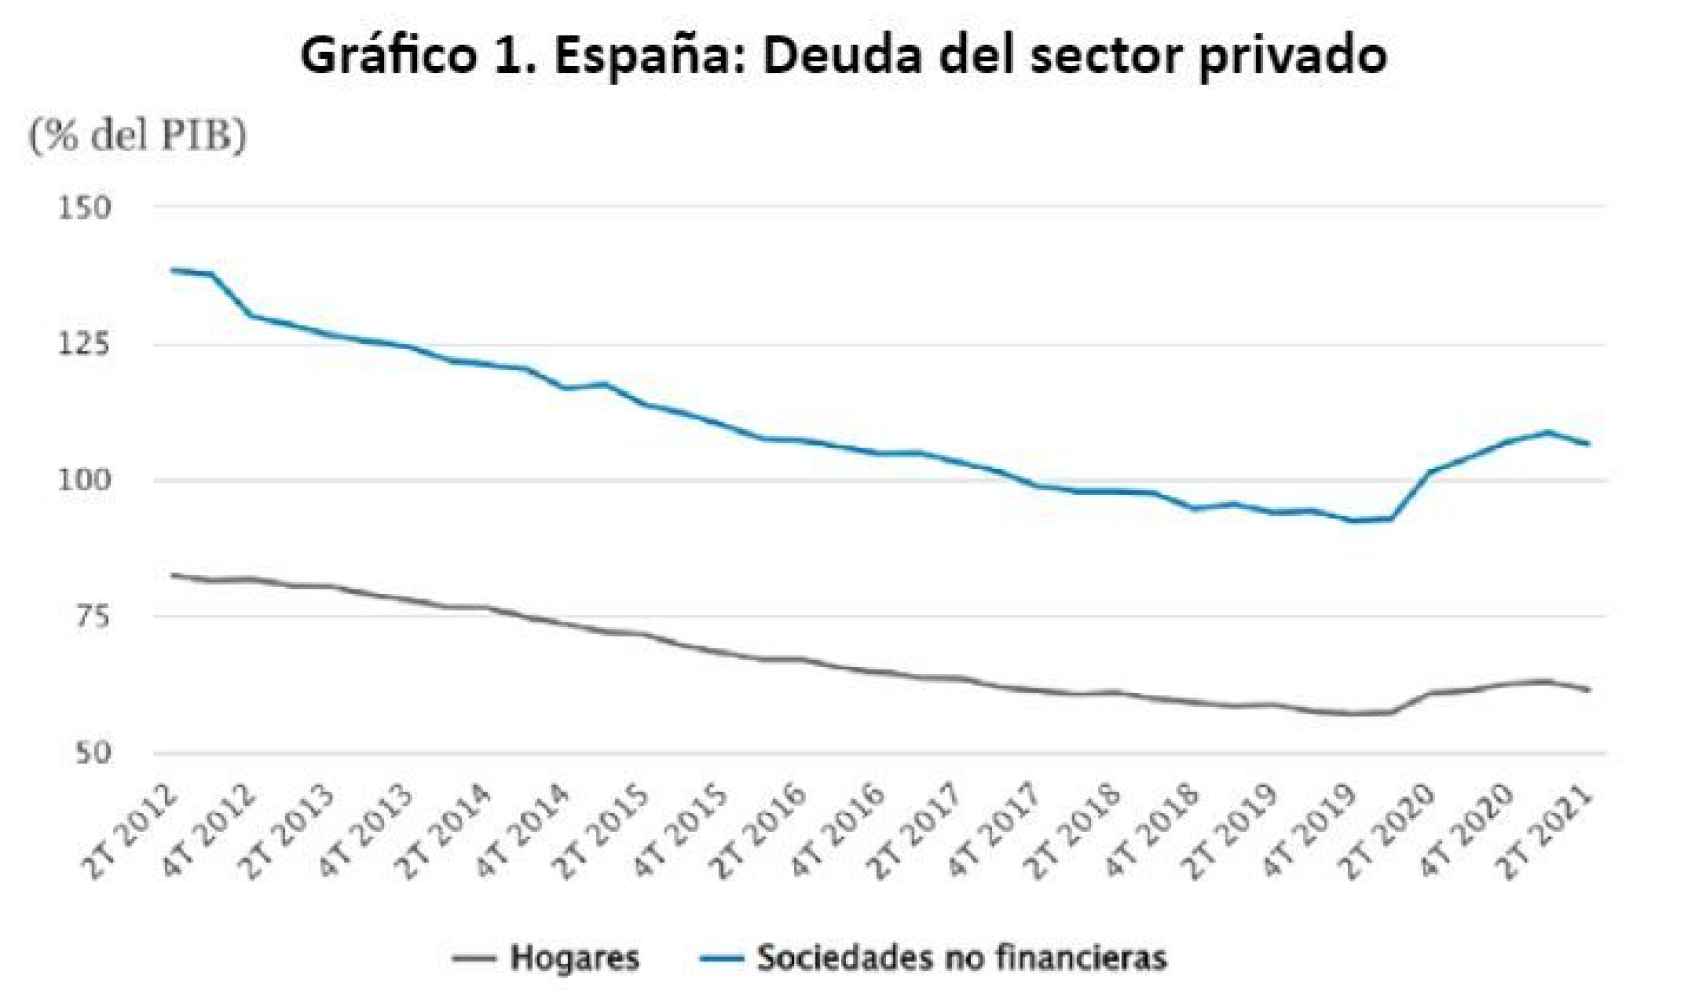 Fuente: CaixaBank Research, a partir de los datos de Banco de España.